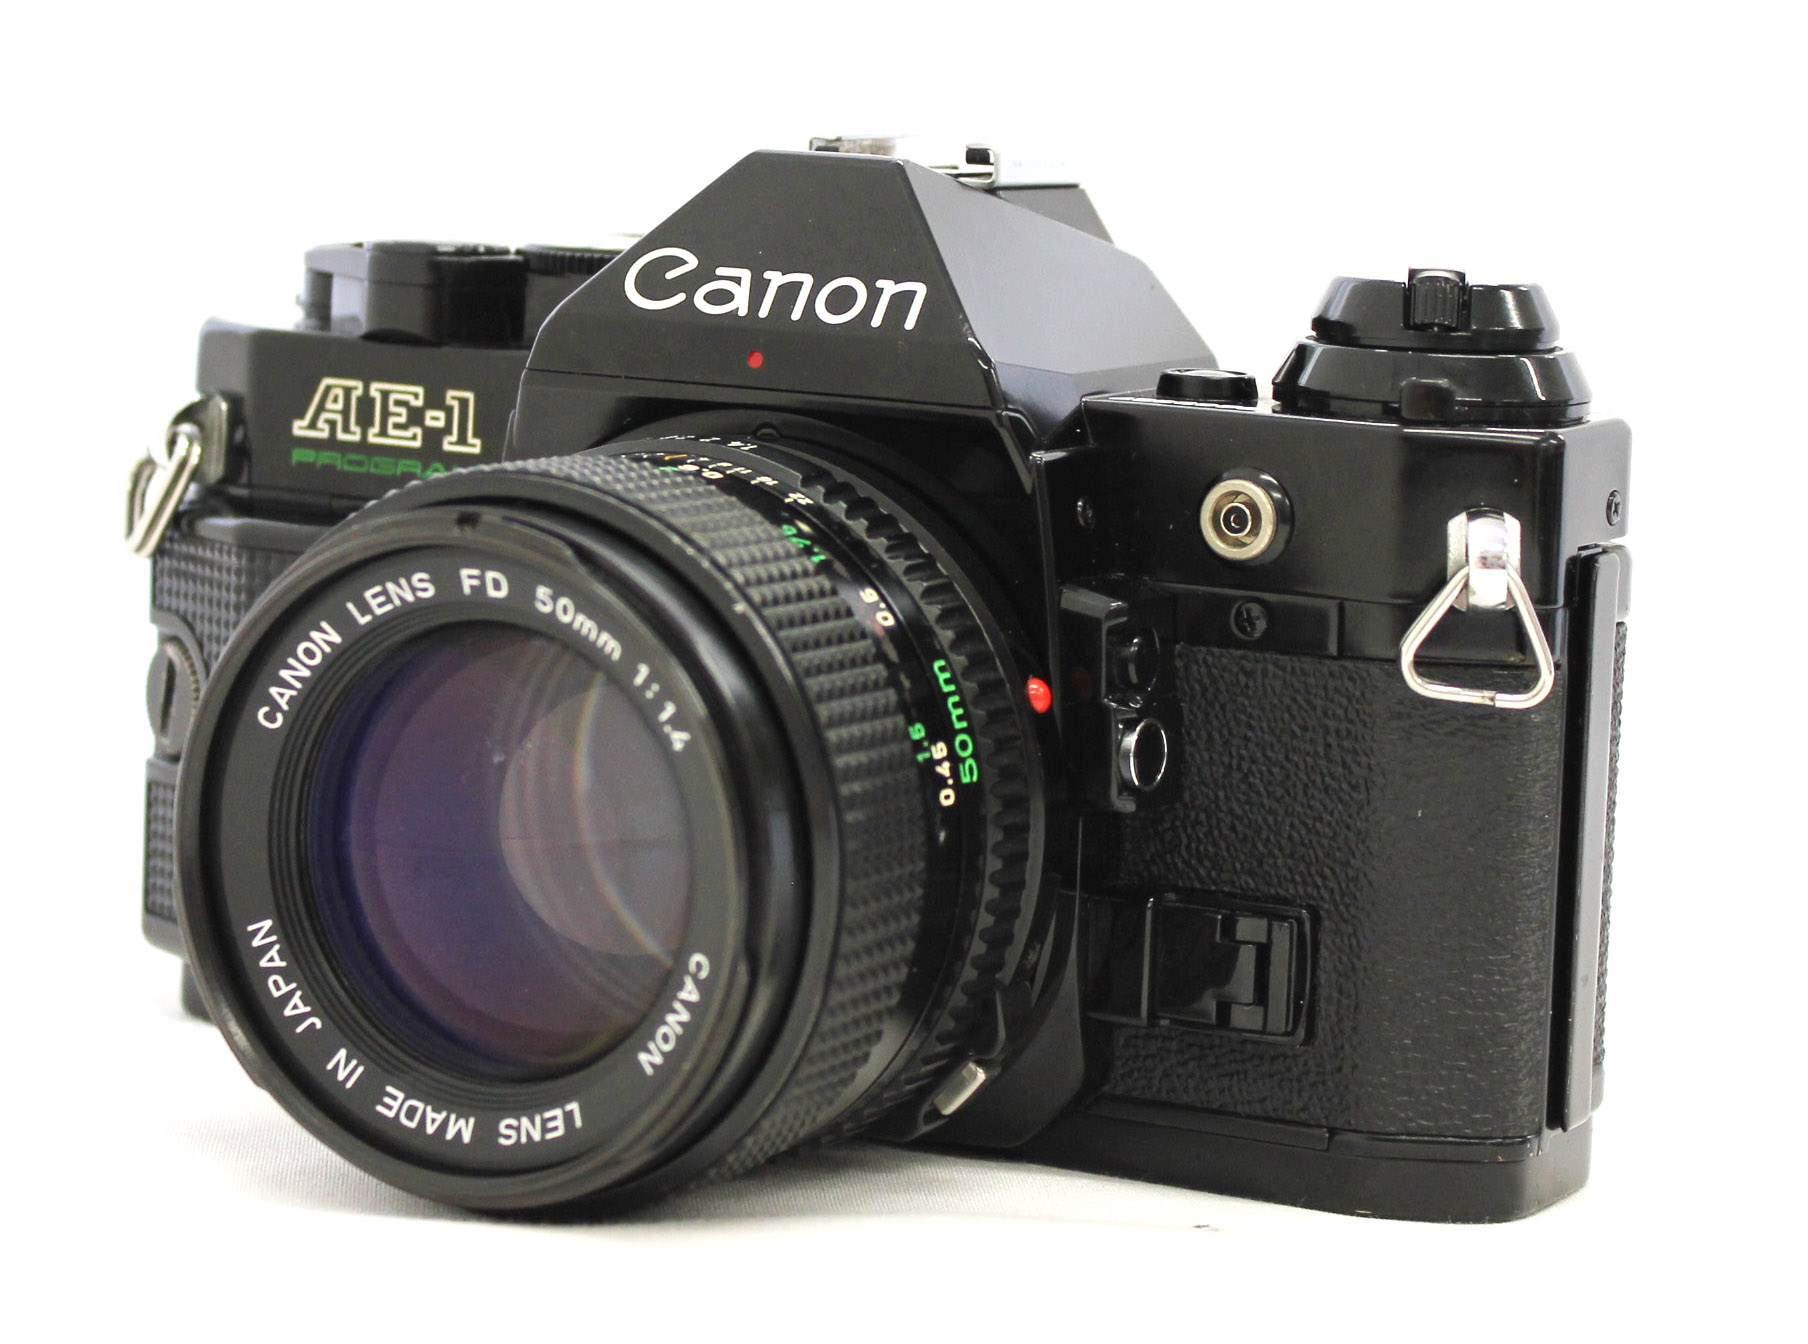 Canon AE-1 Program + FD 50mm f1.4